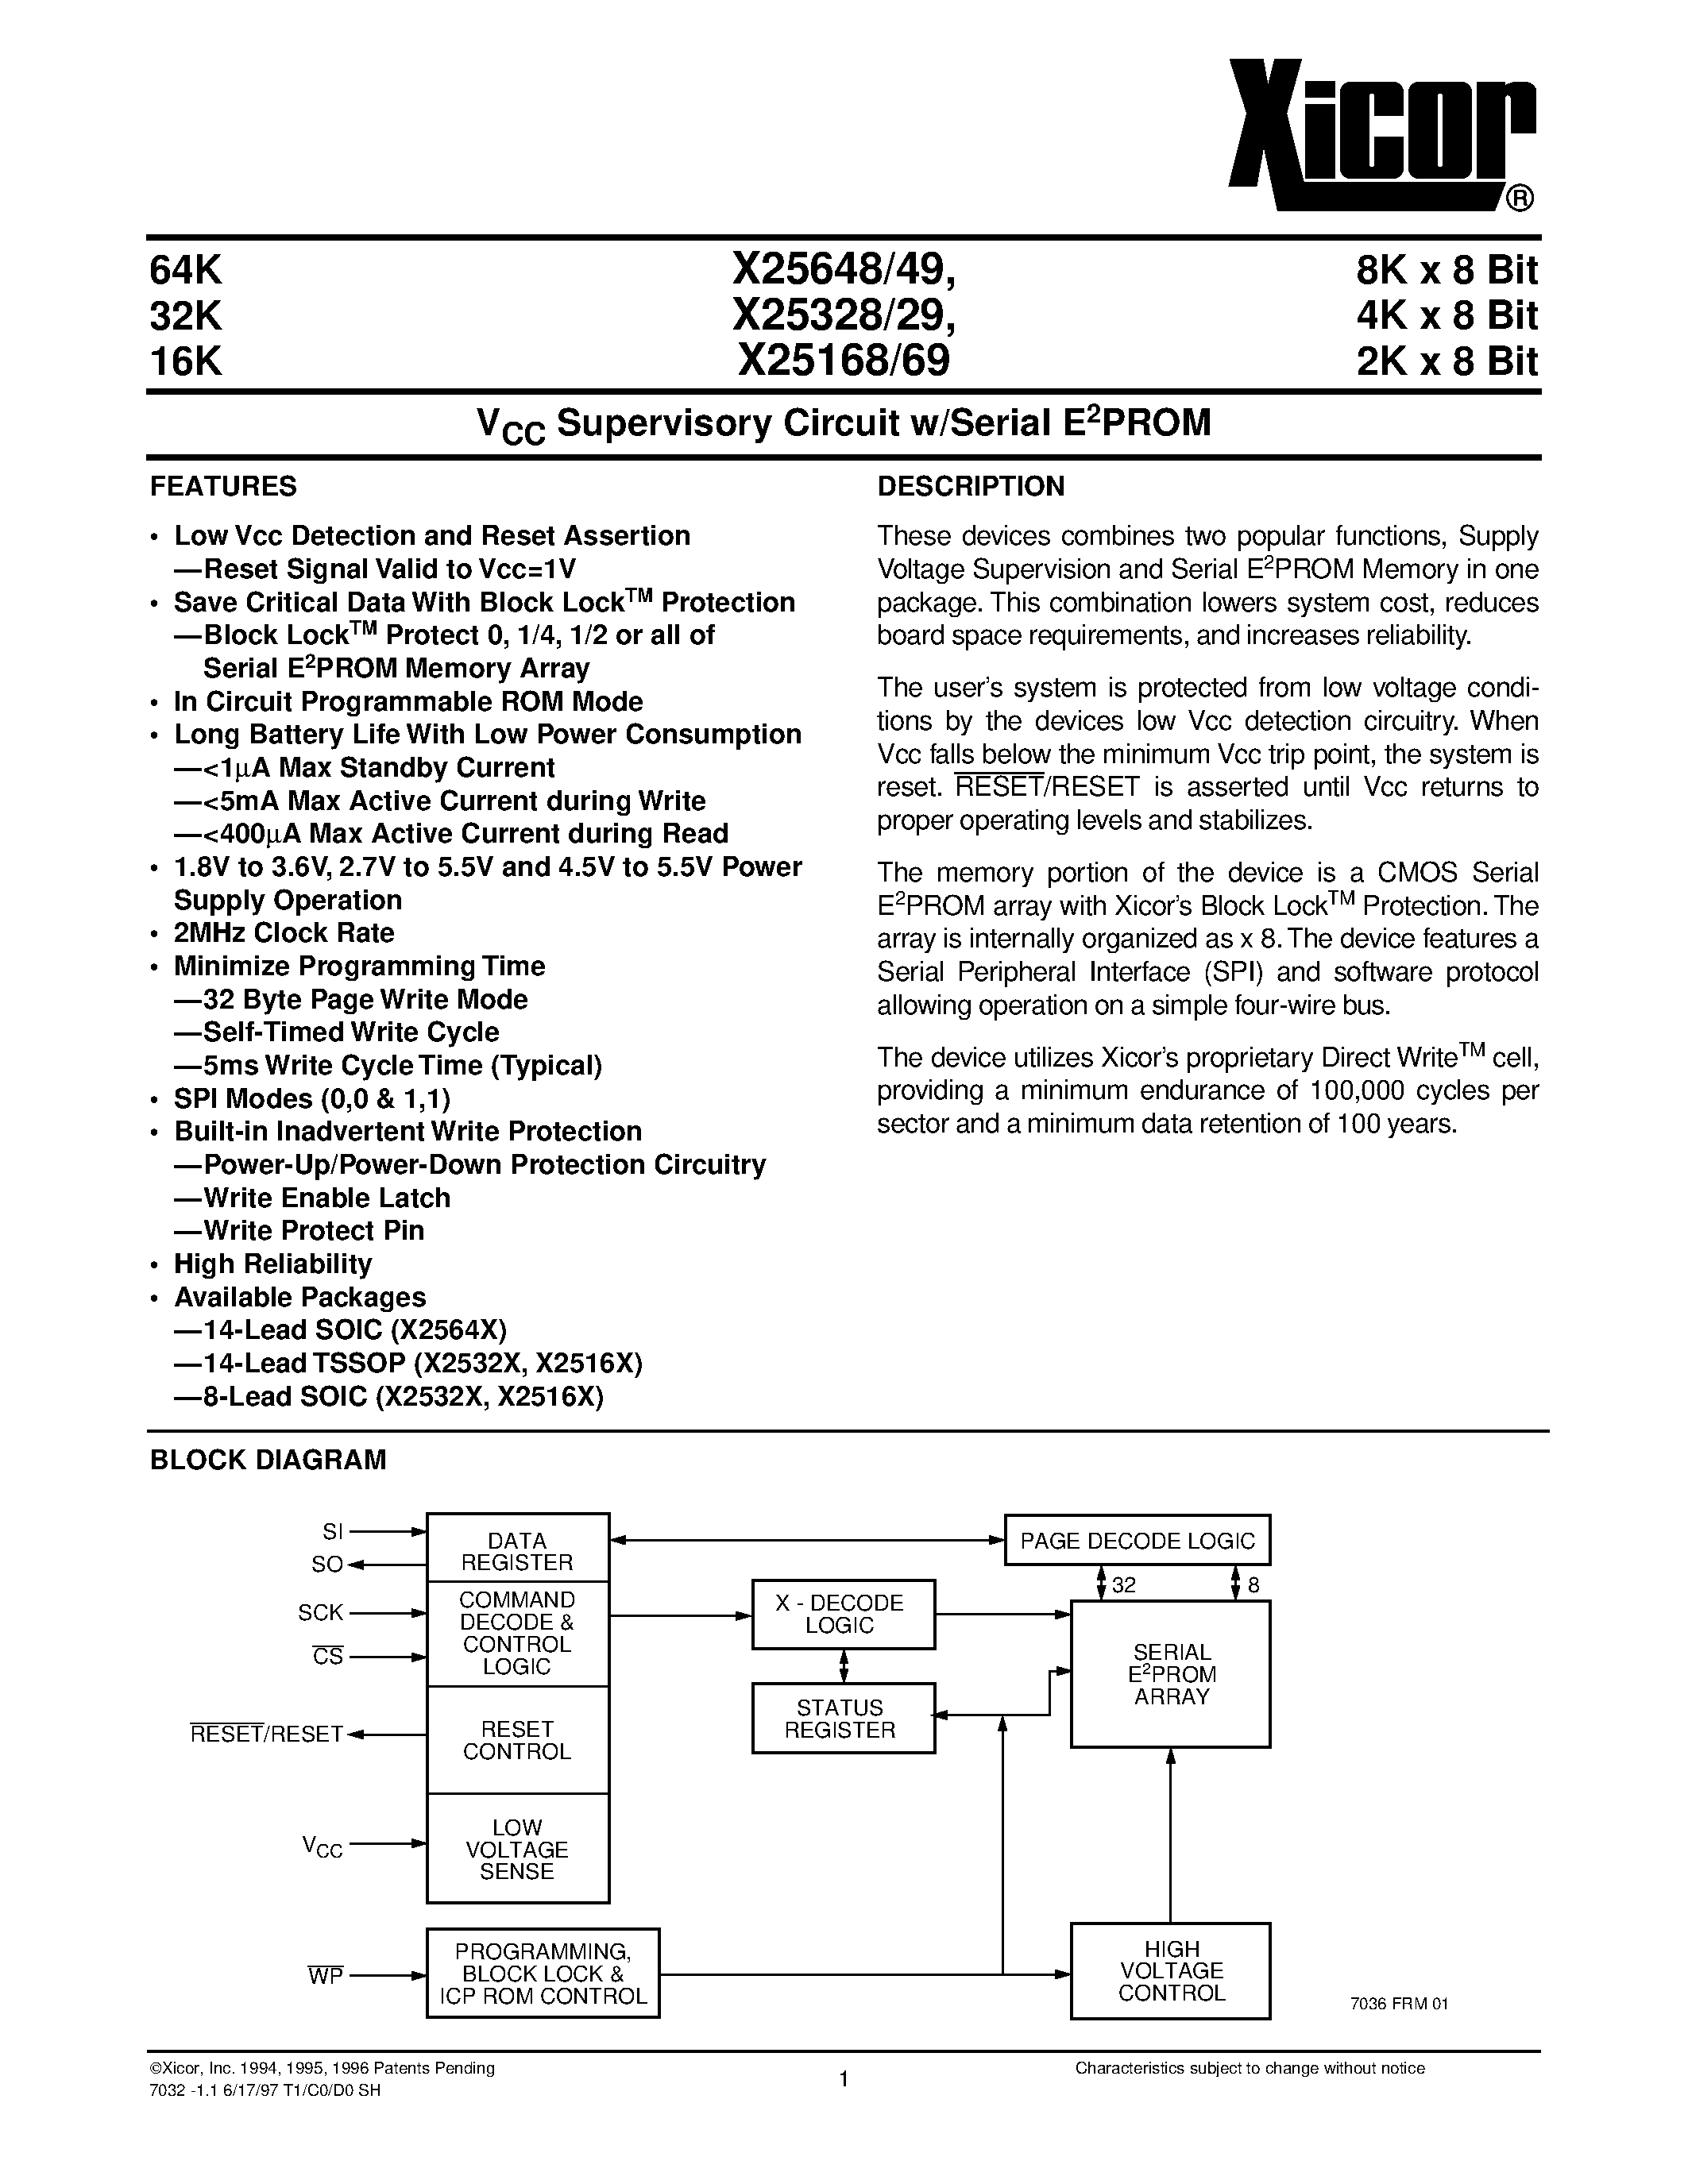 Даташит X25649S14-2.7 - V CC Supervisory Circuit w/Serial E 2 PROM страница 1